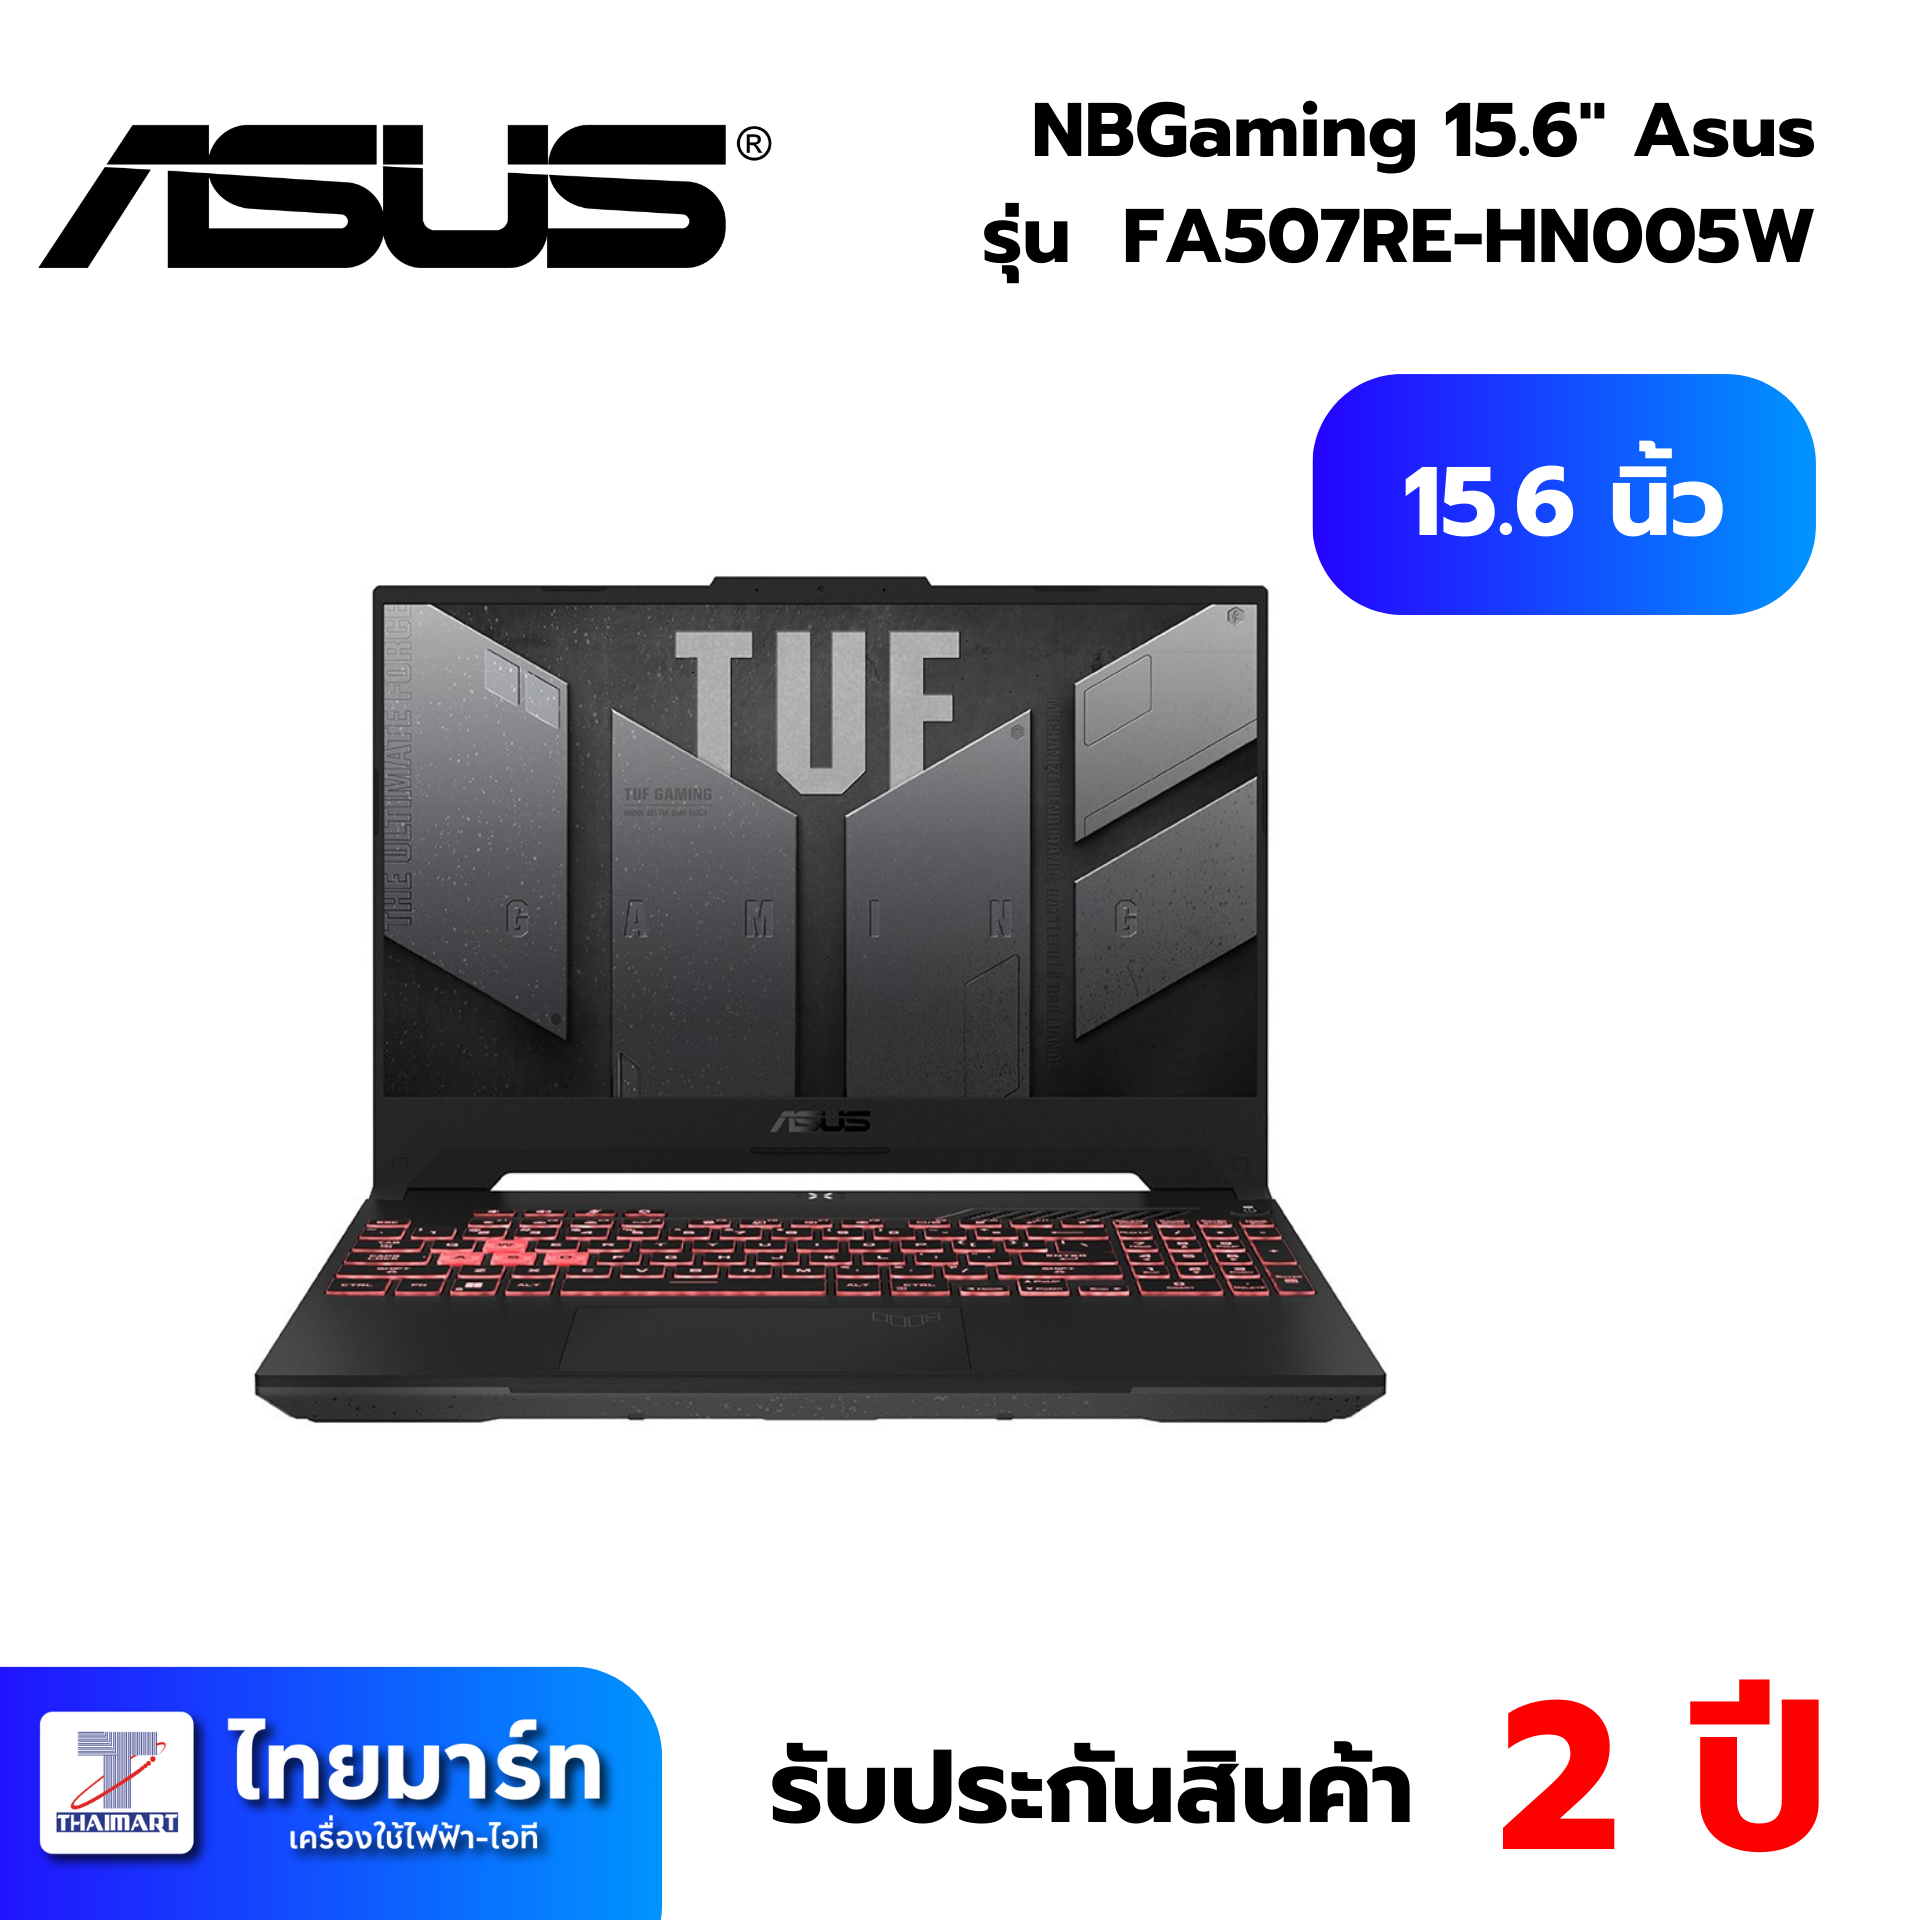 NBGaming 15.6" Asus TUF A15  FA507RE-HN005W